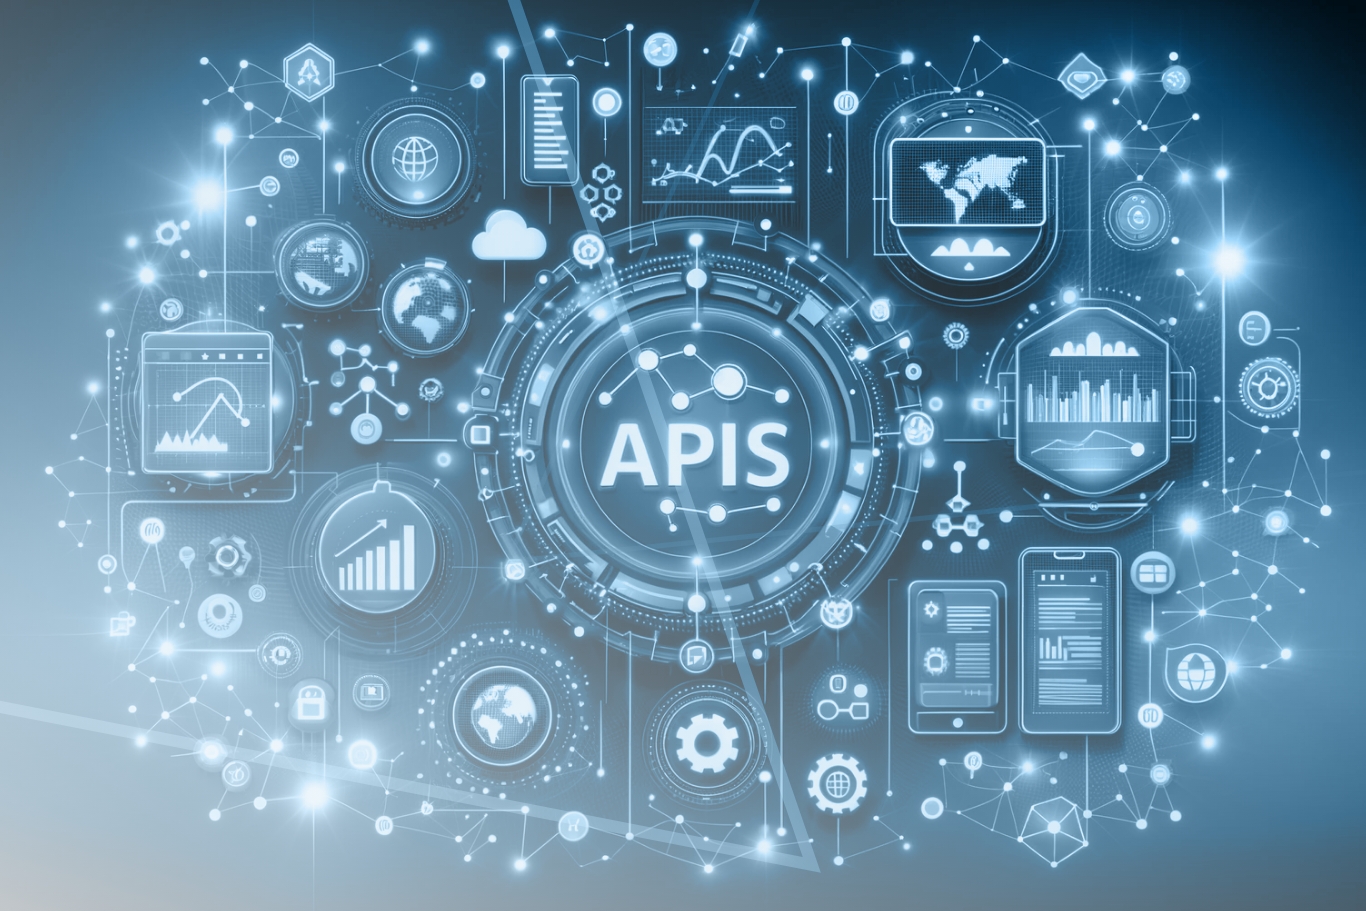 APIs análisis de datos, toma de decisiones, desarrollo software a medida, estrategias competitivas, integración servicios, transformación digital